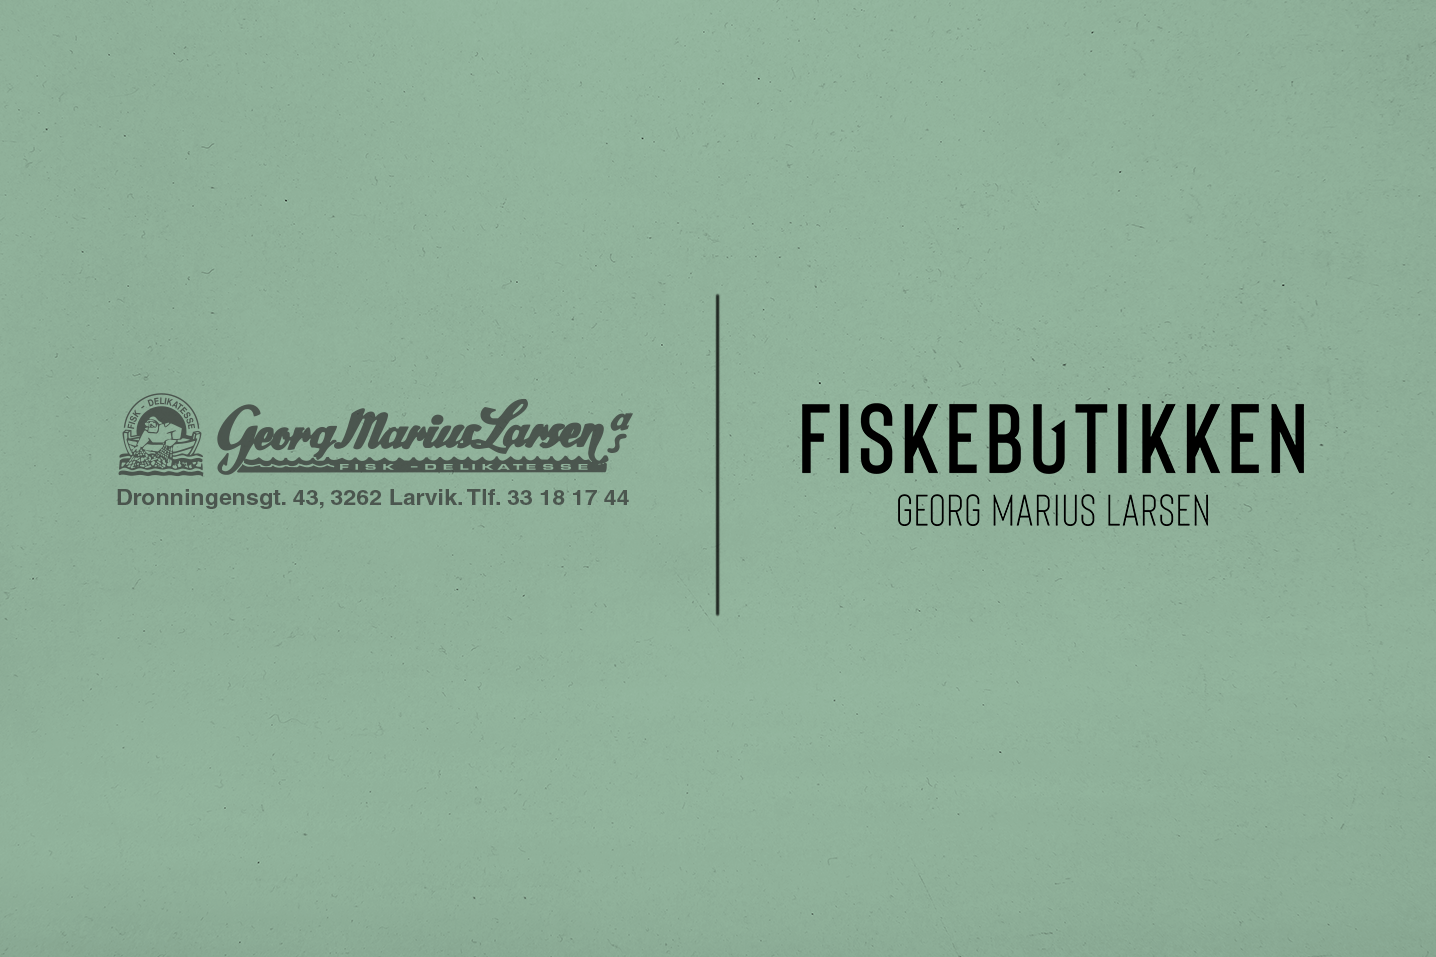 Fiskebutikken identitetsdesign: logo (før og etter) på grønn bakgrunn